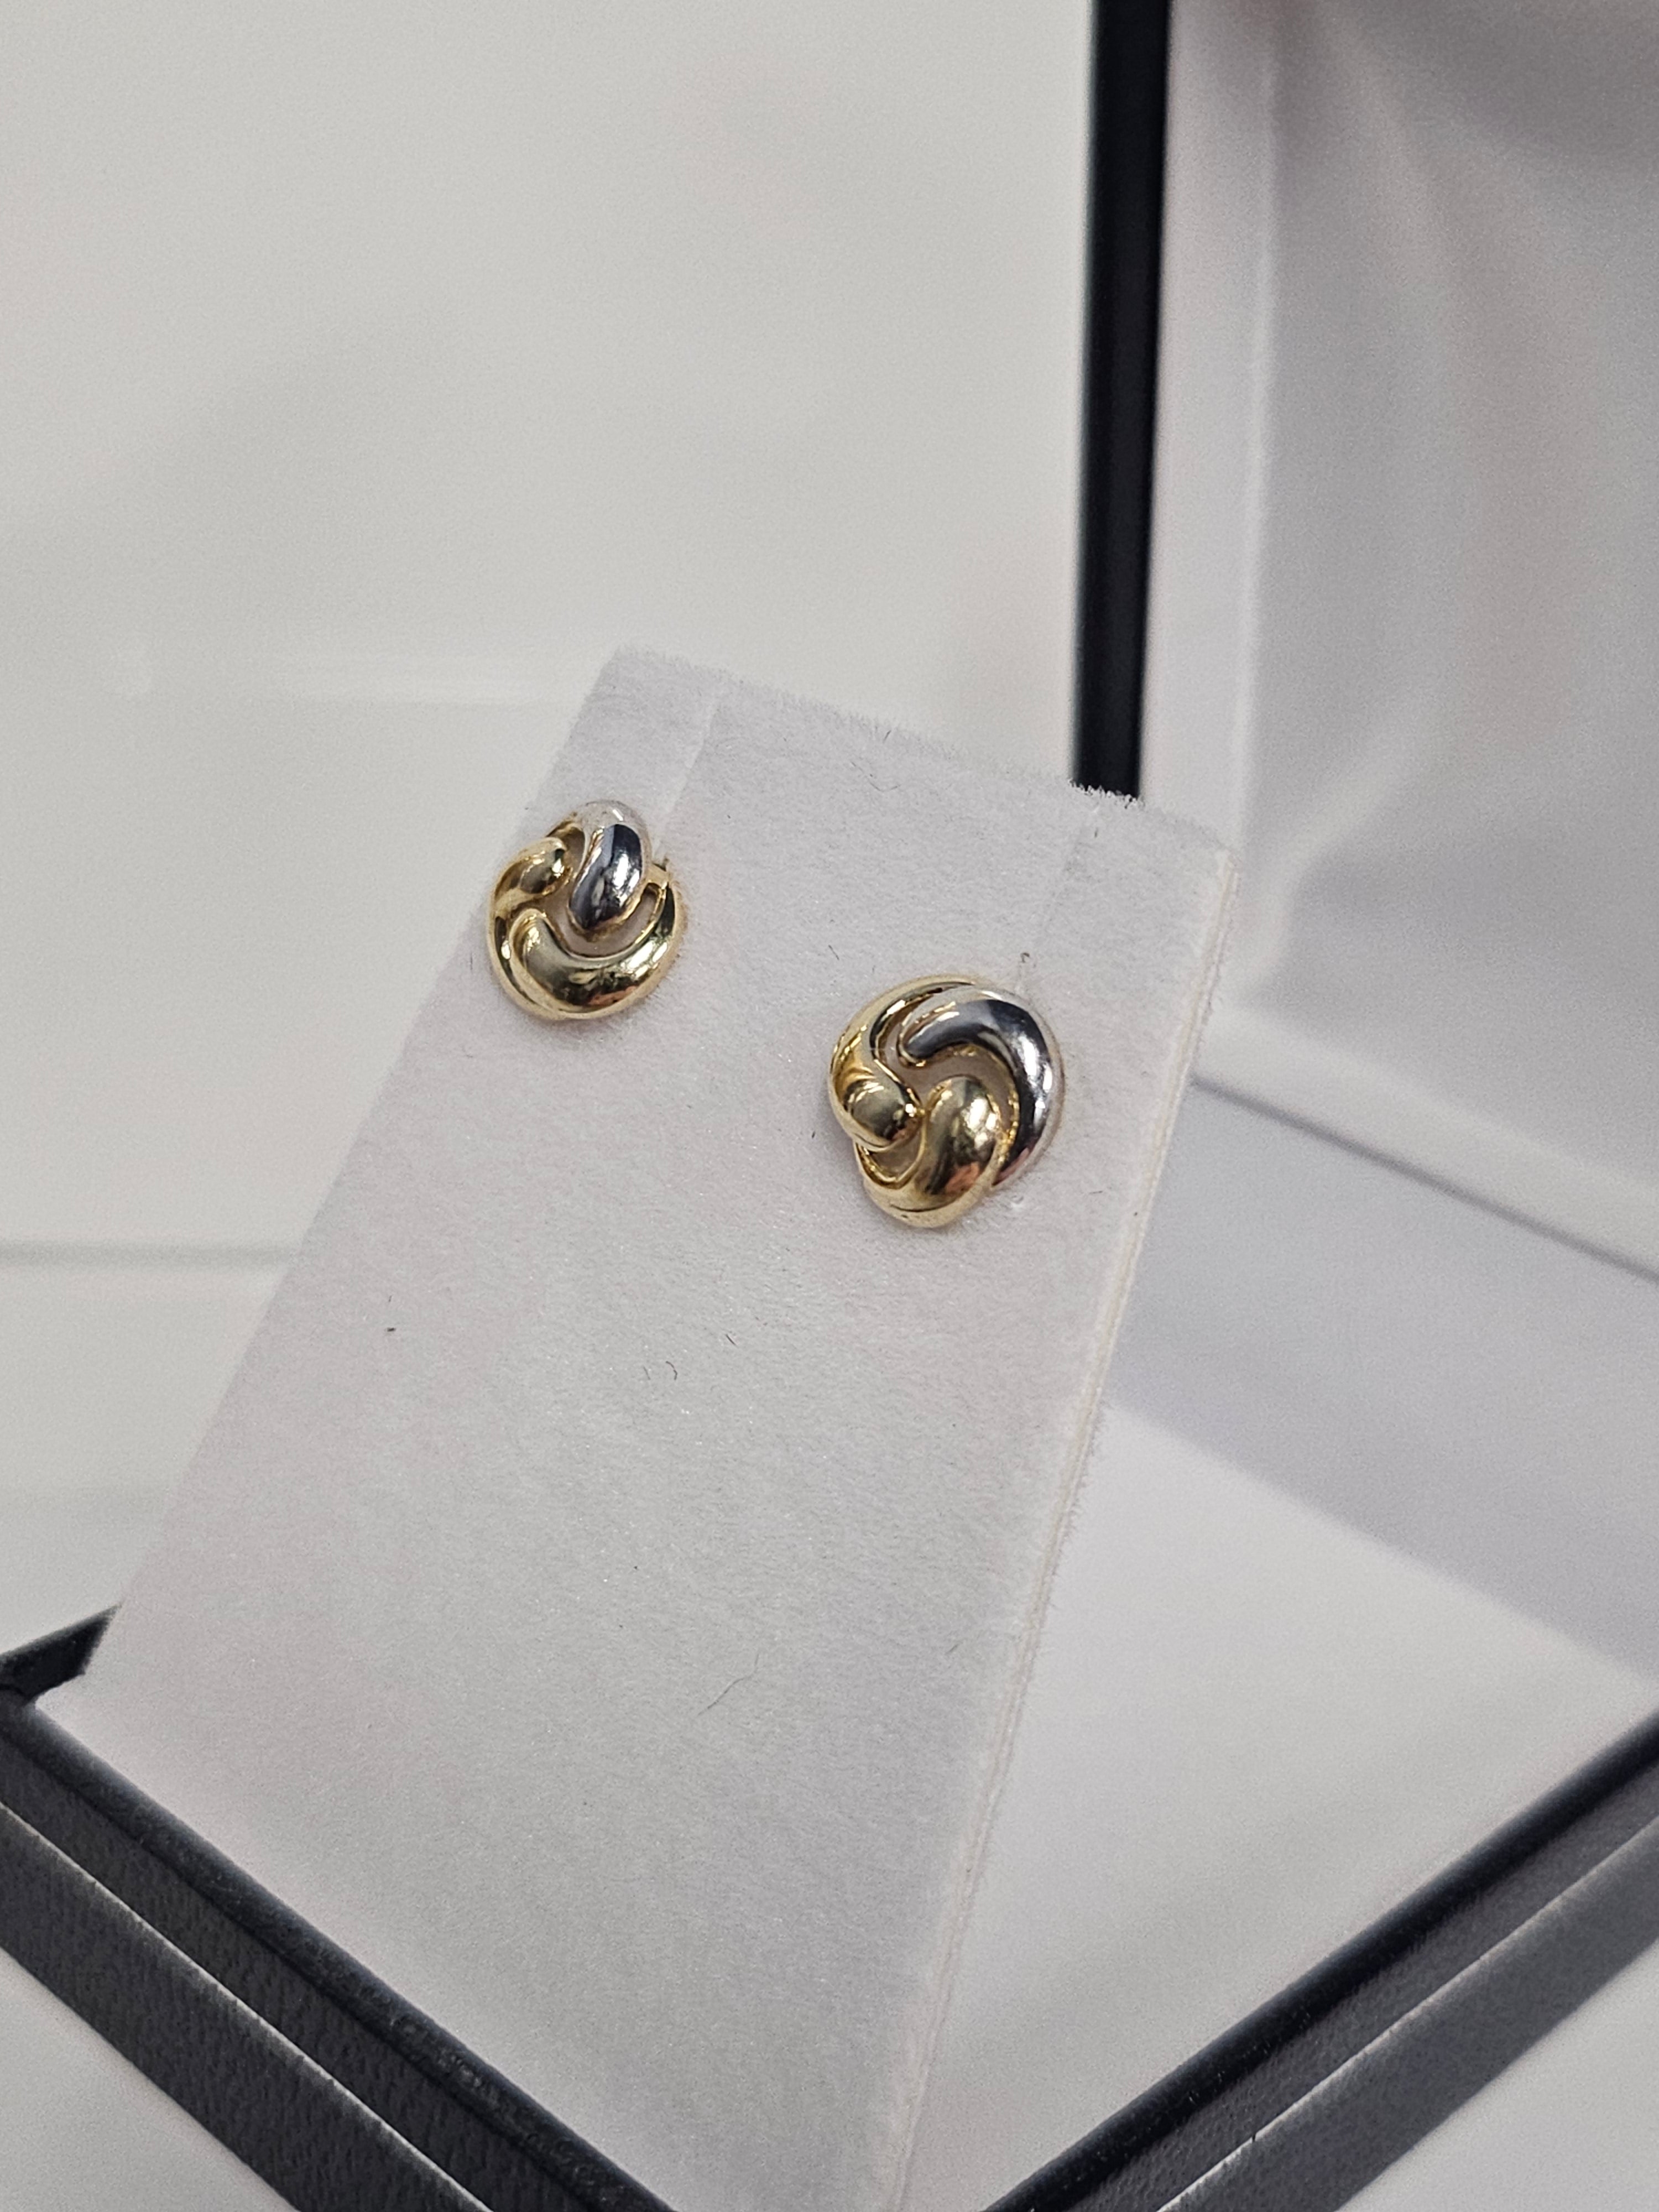 Gold Stud Earrings - Love Knot 326